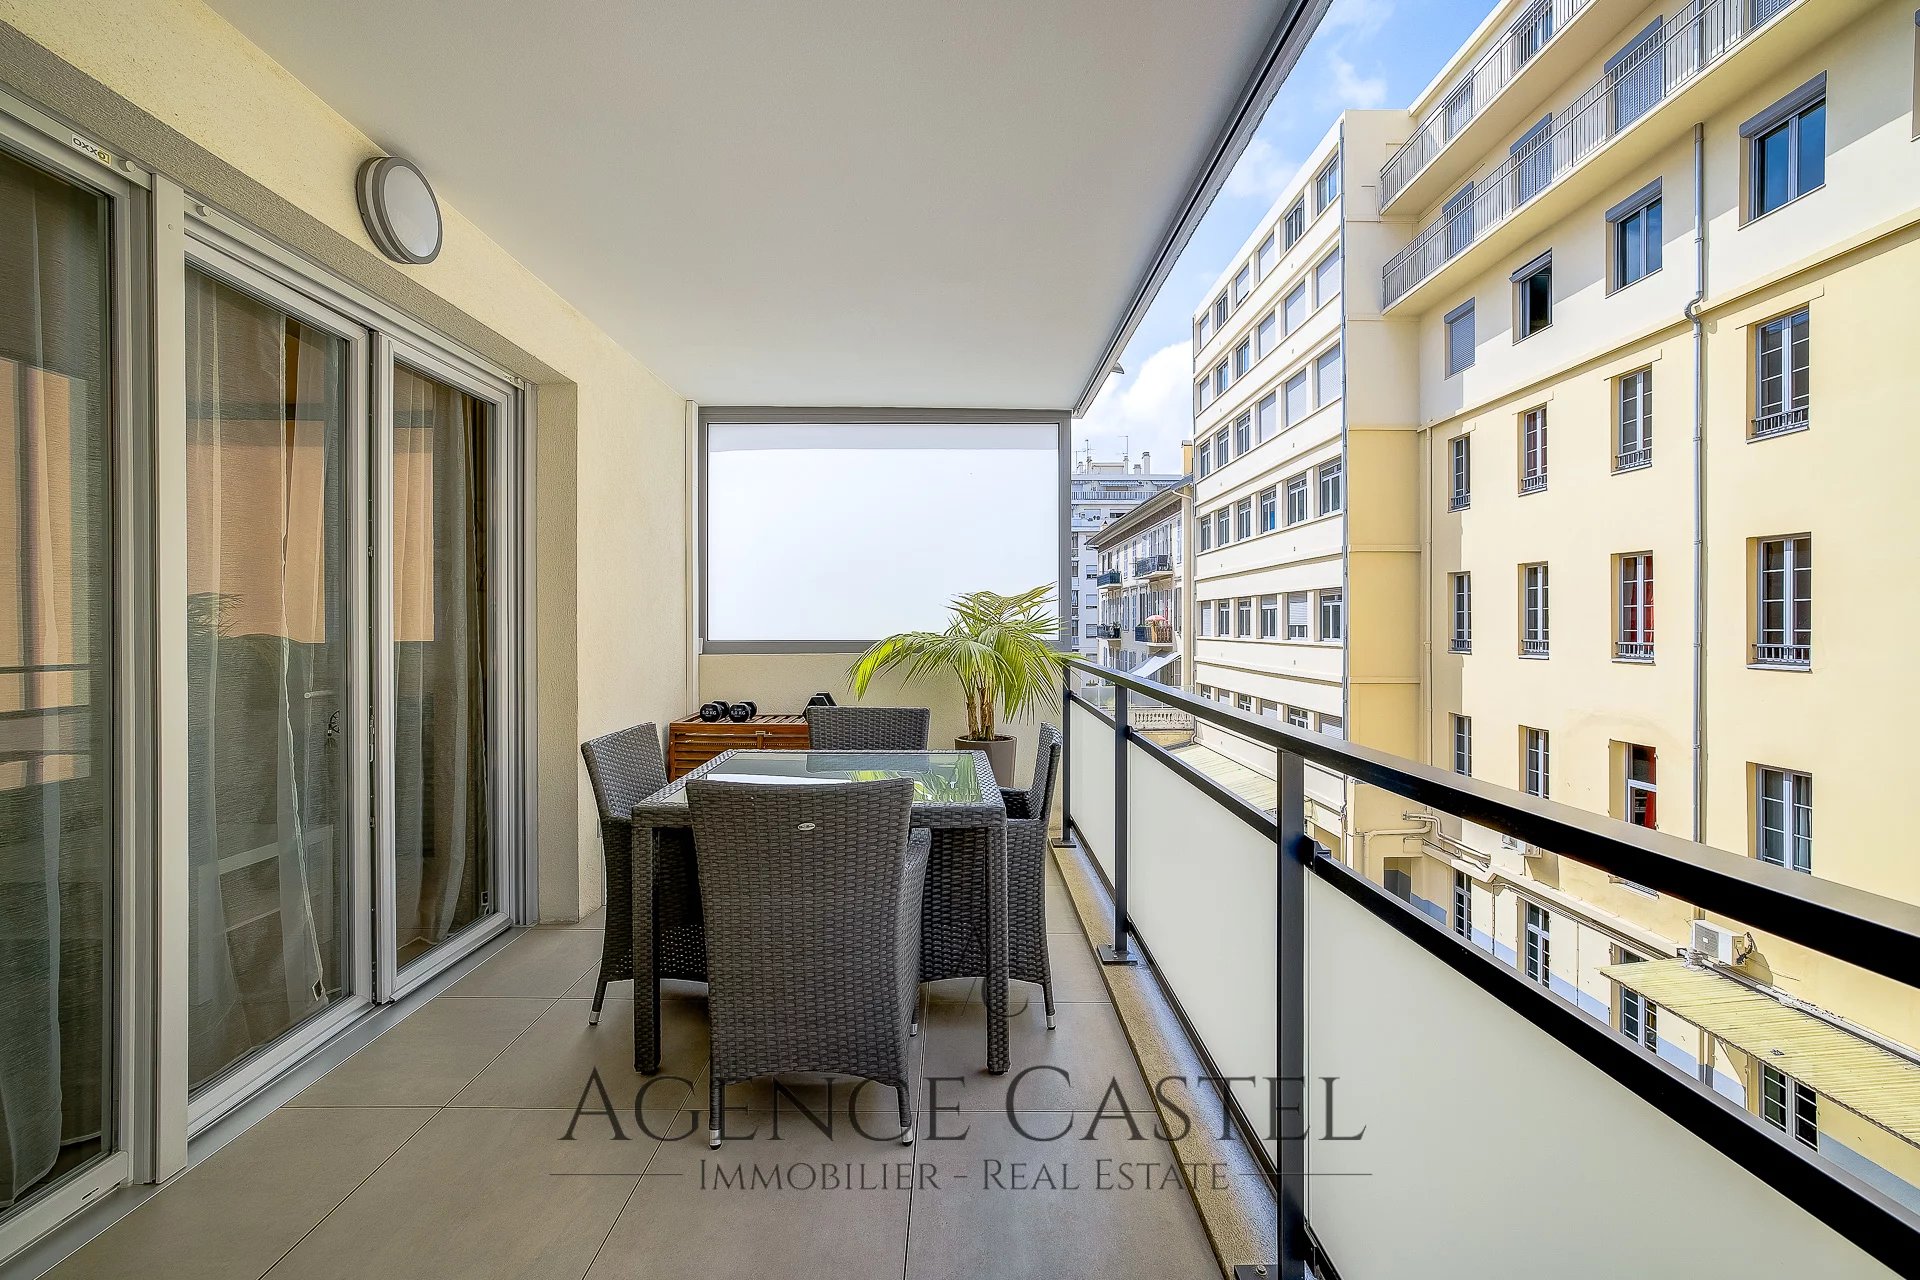 Vente Appartement 28m² 1 Pièce à Nice (06000) - Agence Castel